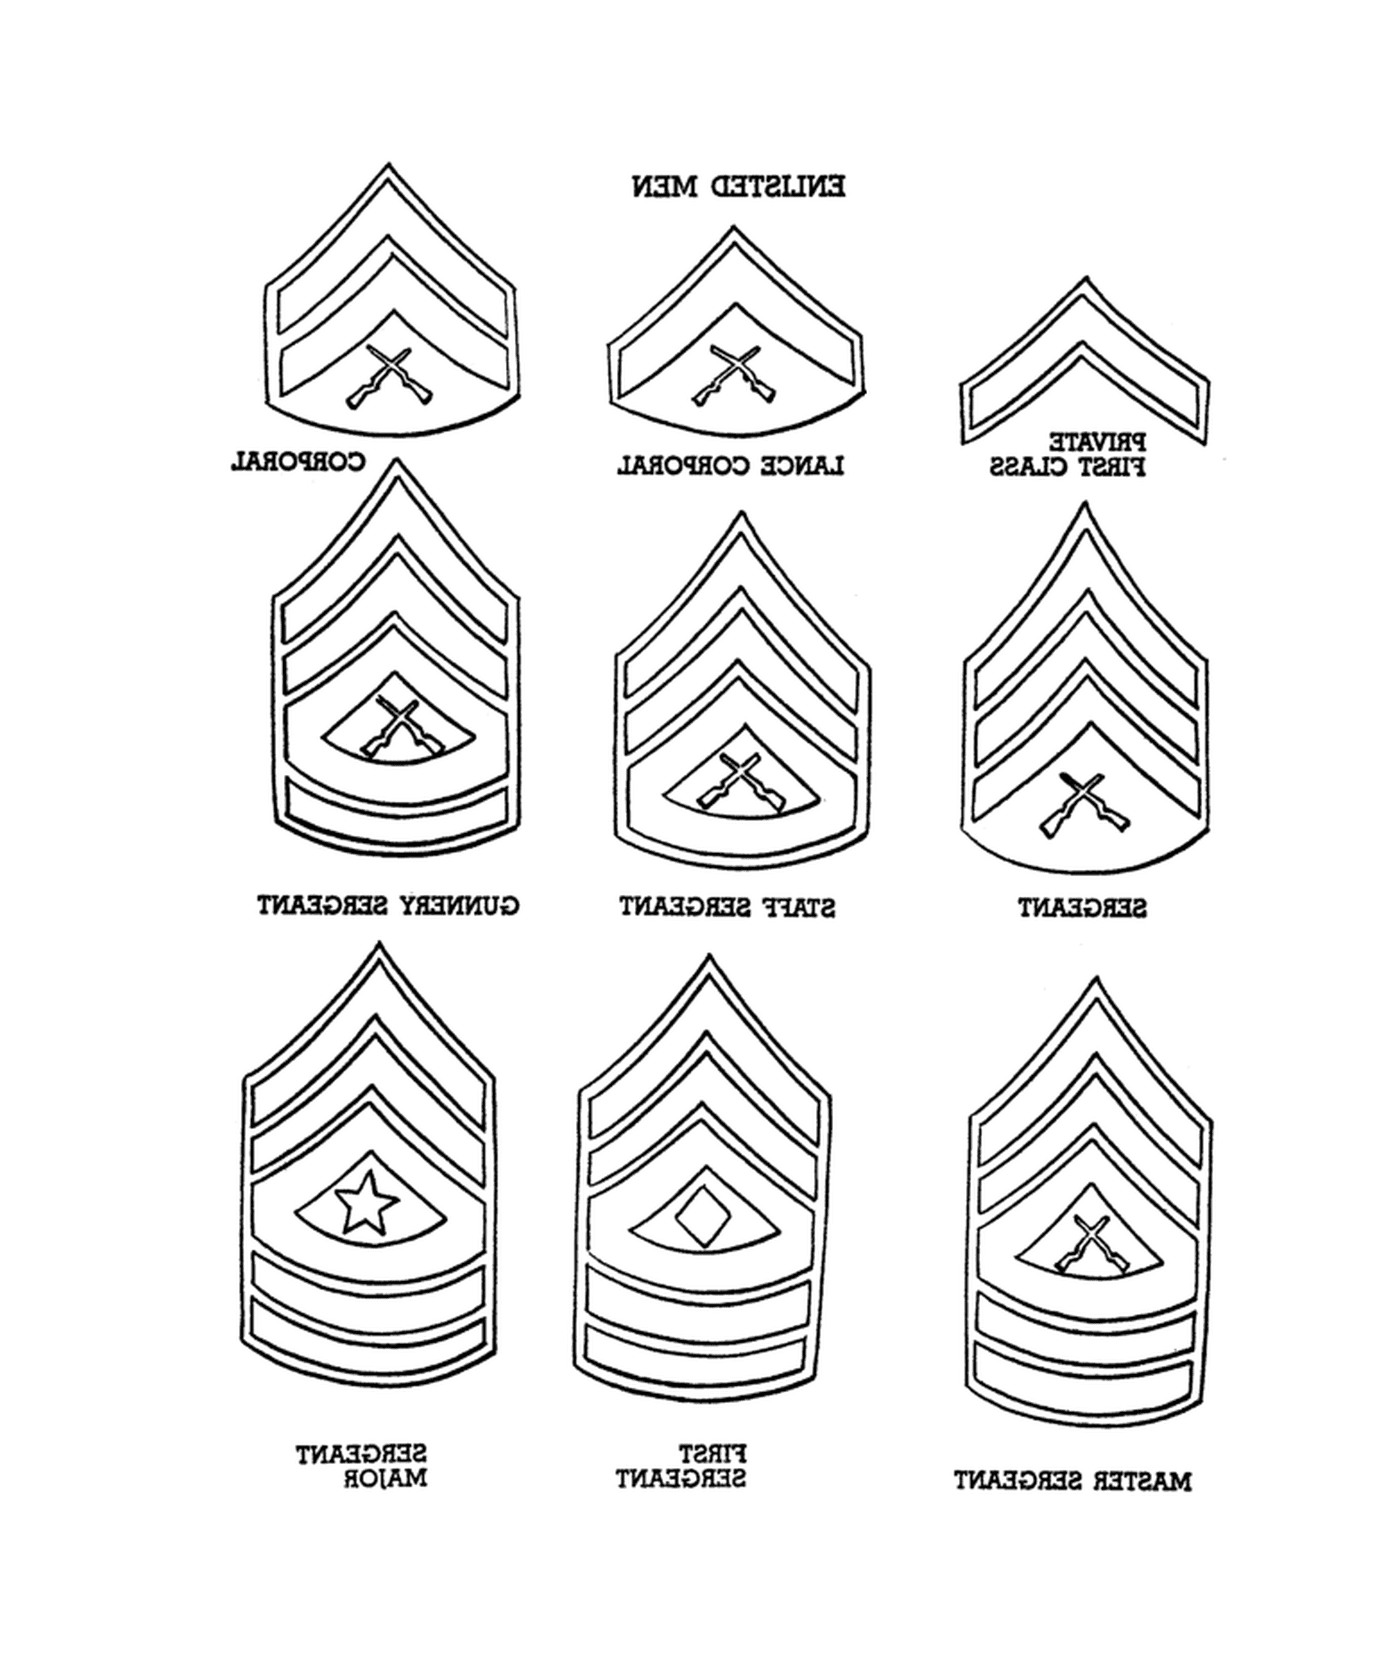  Ranks do Corpo de Fuzileiros Navais: um conjunto de nove insígnias de diferentes posições militares 